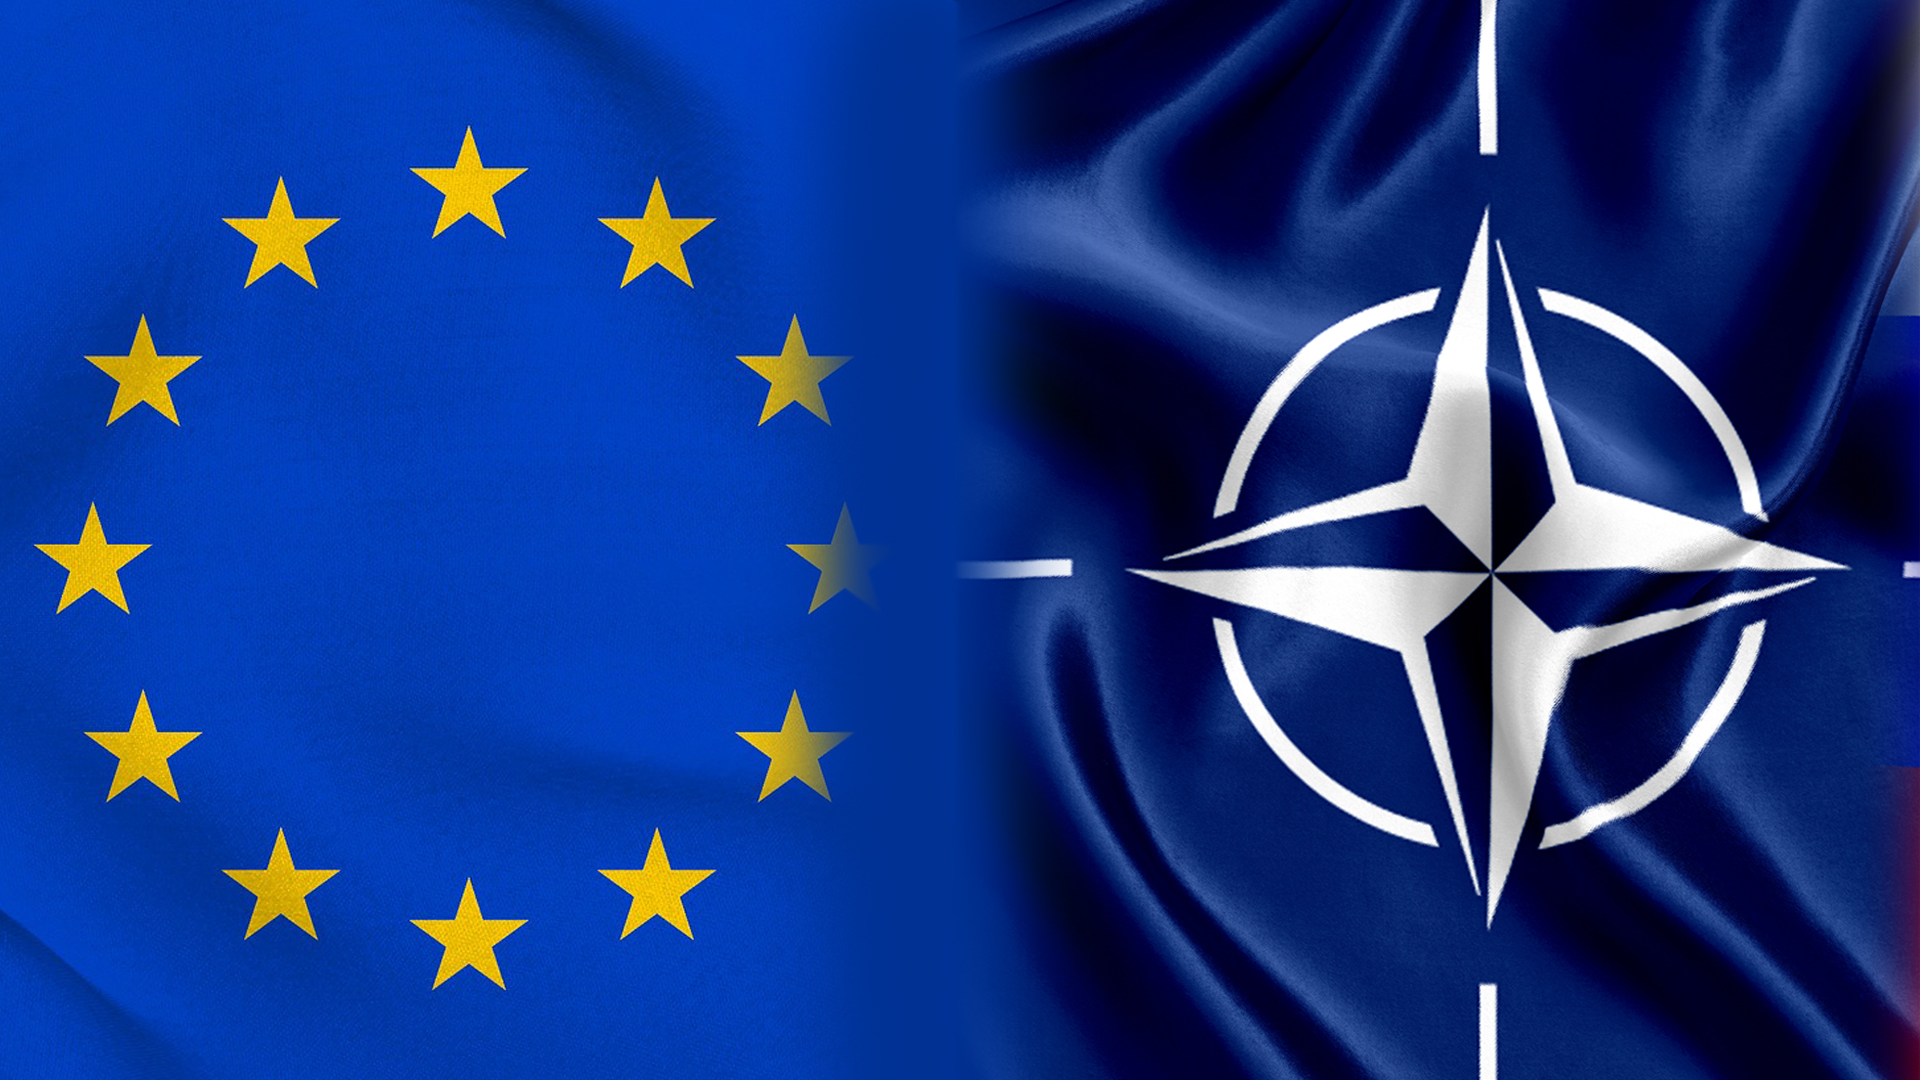 الناتو وأوروبا بعد كورونا: رؤية استراتيجية لمستقبل تنظيمات الأمن الإقليمي